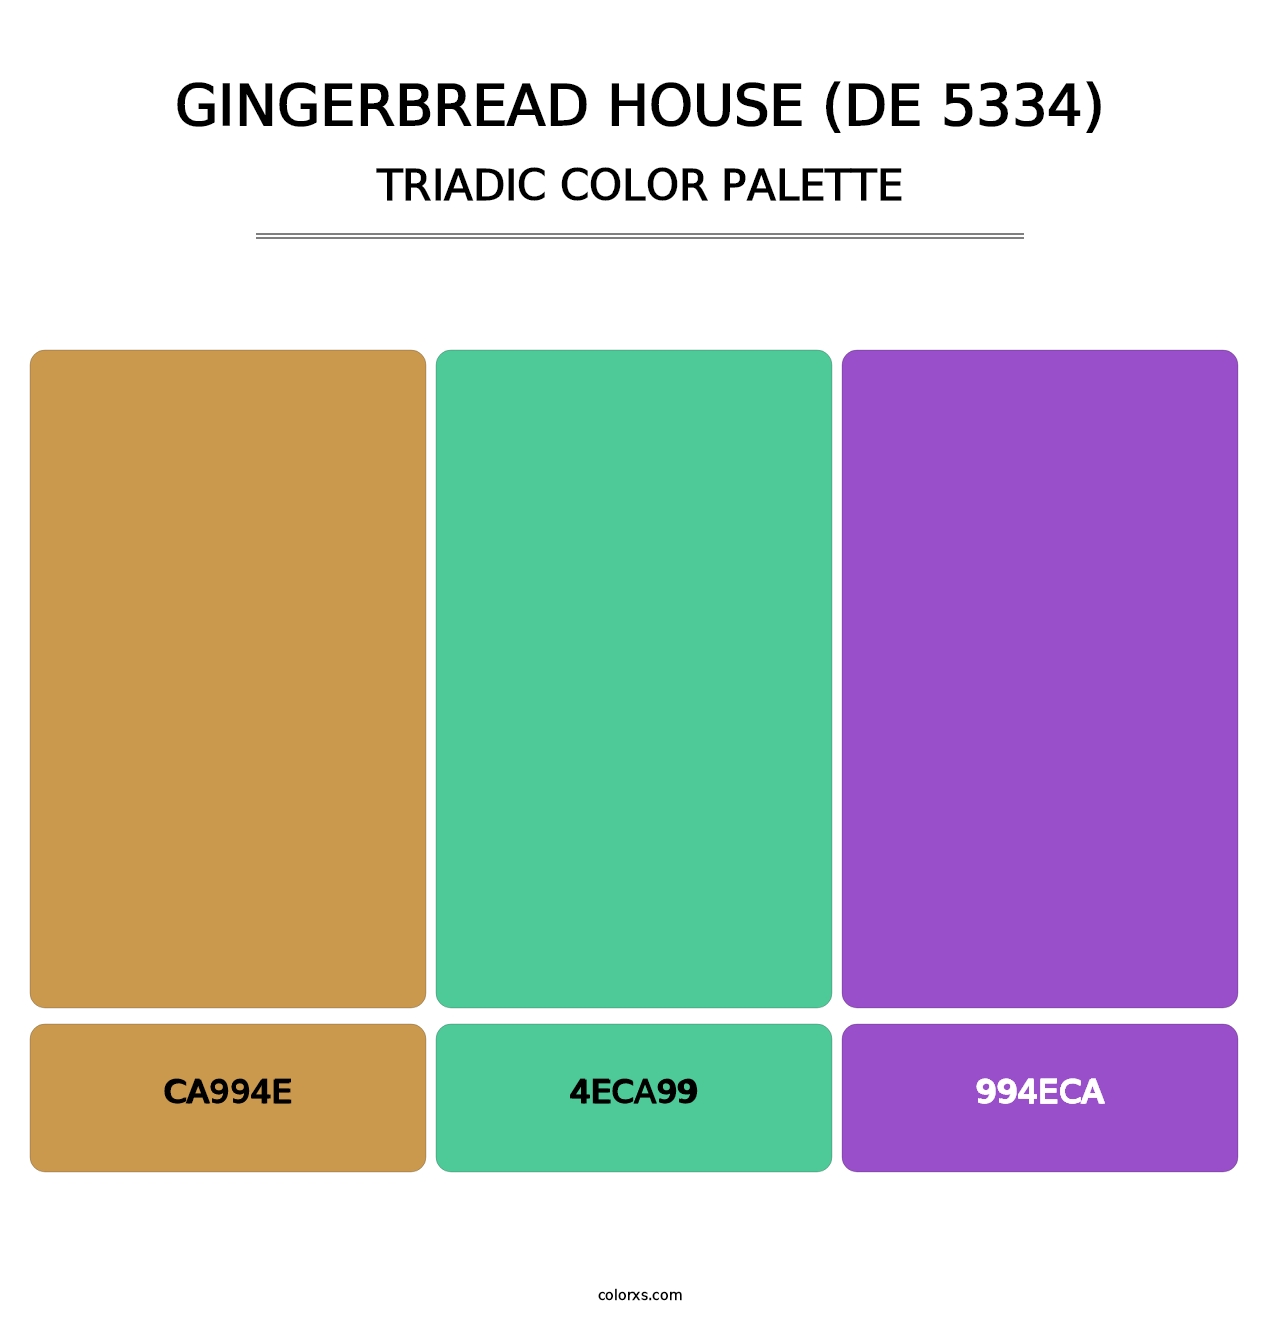 Gingerbread House (DE 5334) - Triadic Color Palette